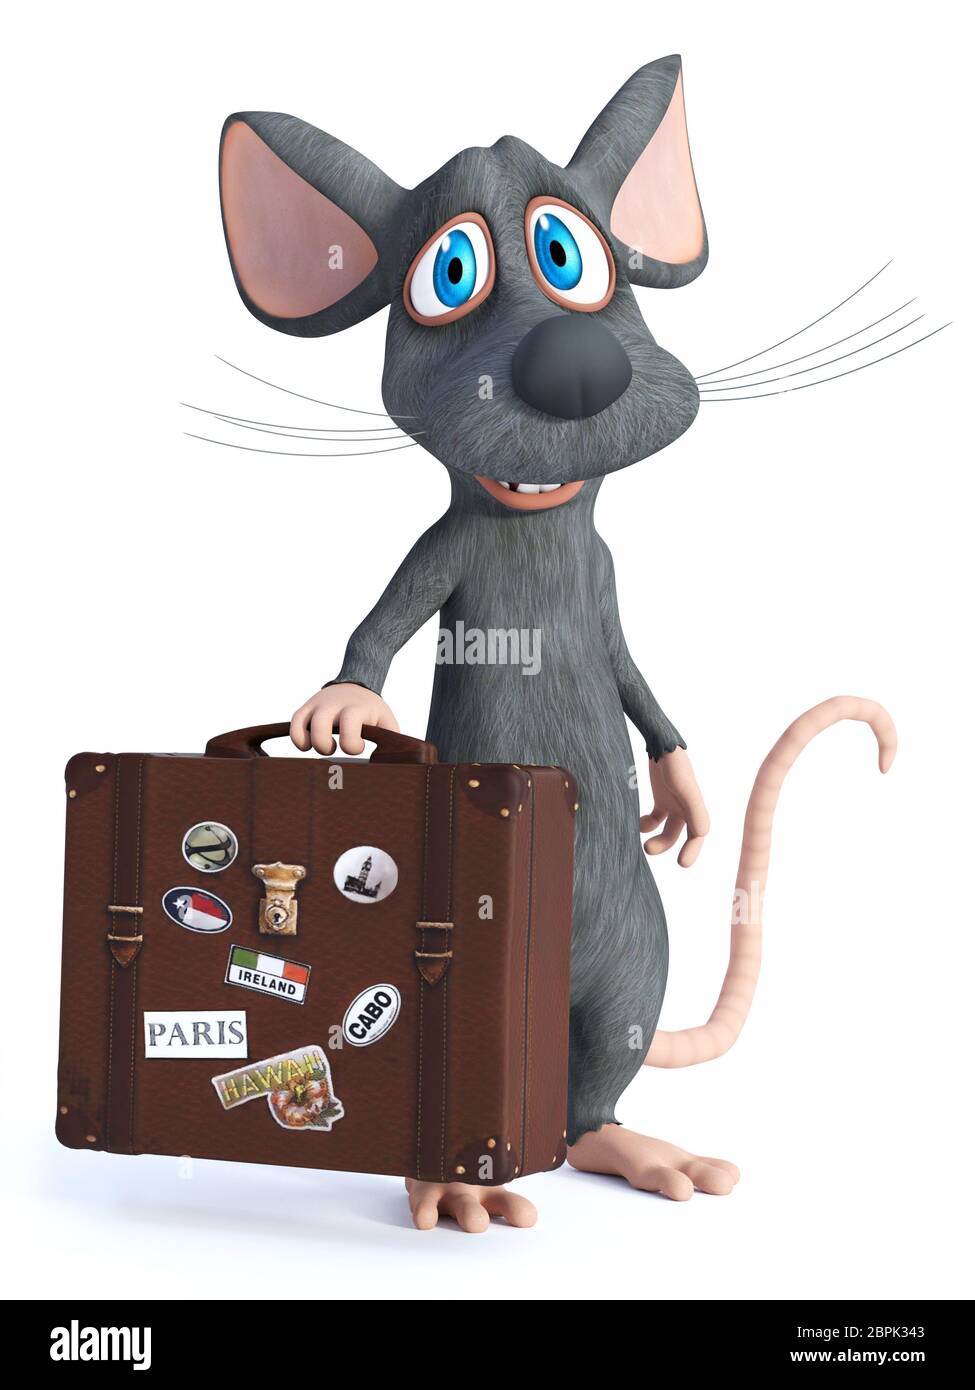 3D-Rendering von einem netten cartoon Maus mit einem Reisekoffer und lächelnd. Er scheint bereit zu reisen. Weißer Hintergrund. Stockfoto